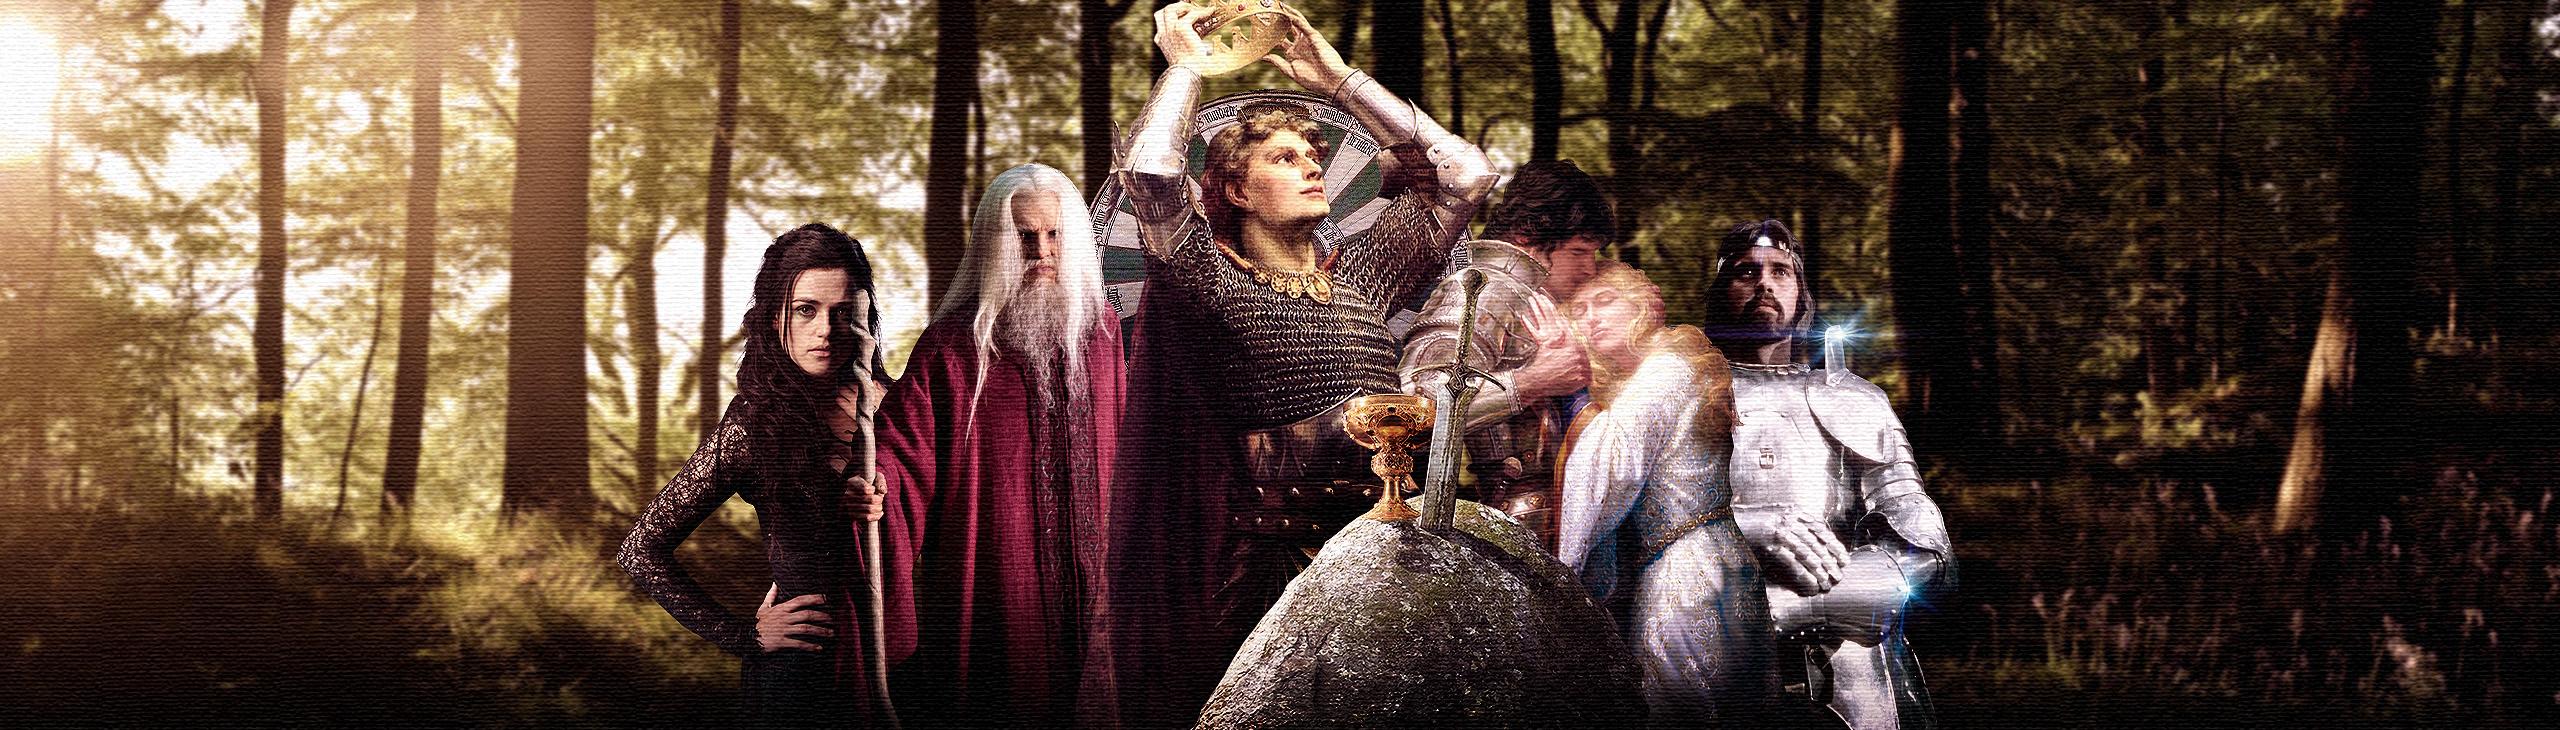 Rei Artur: História e mito